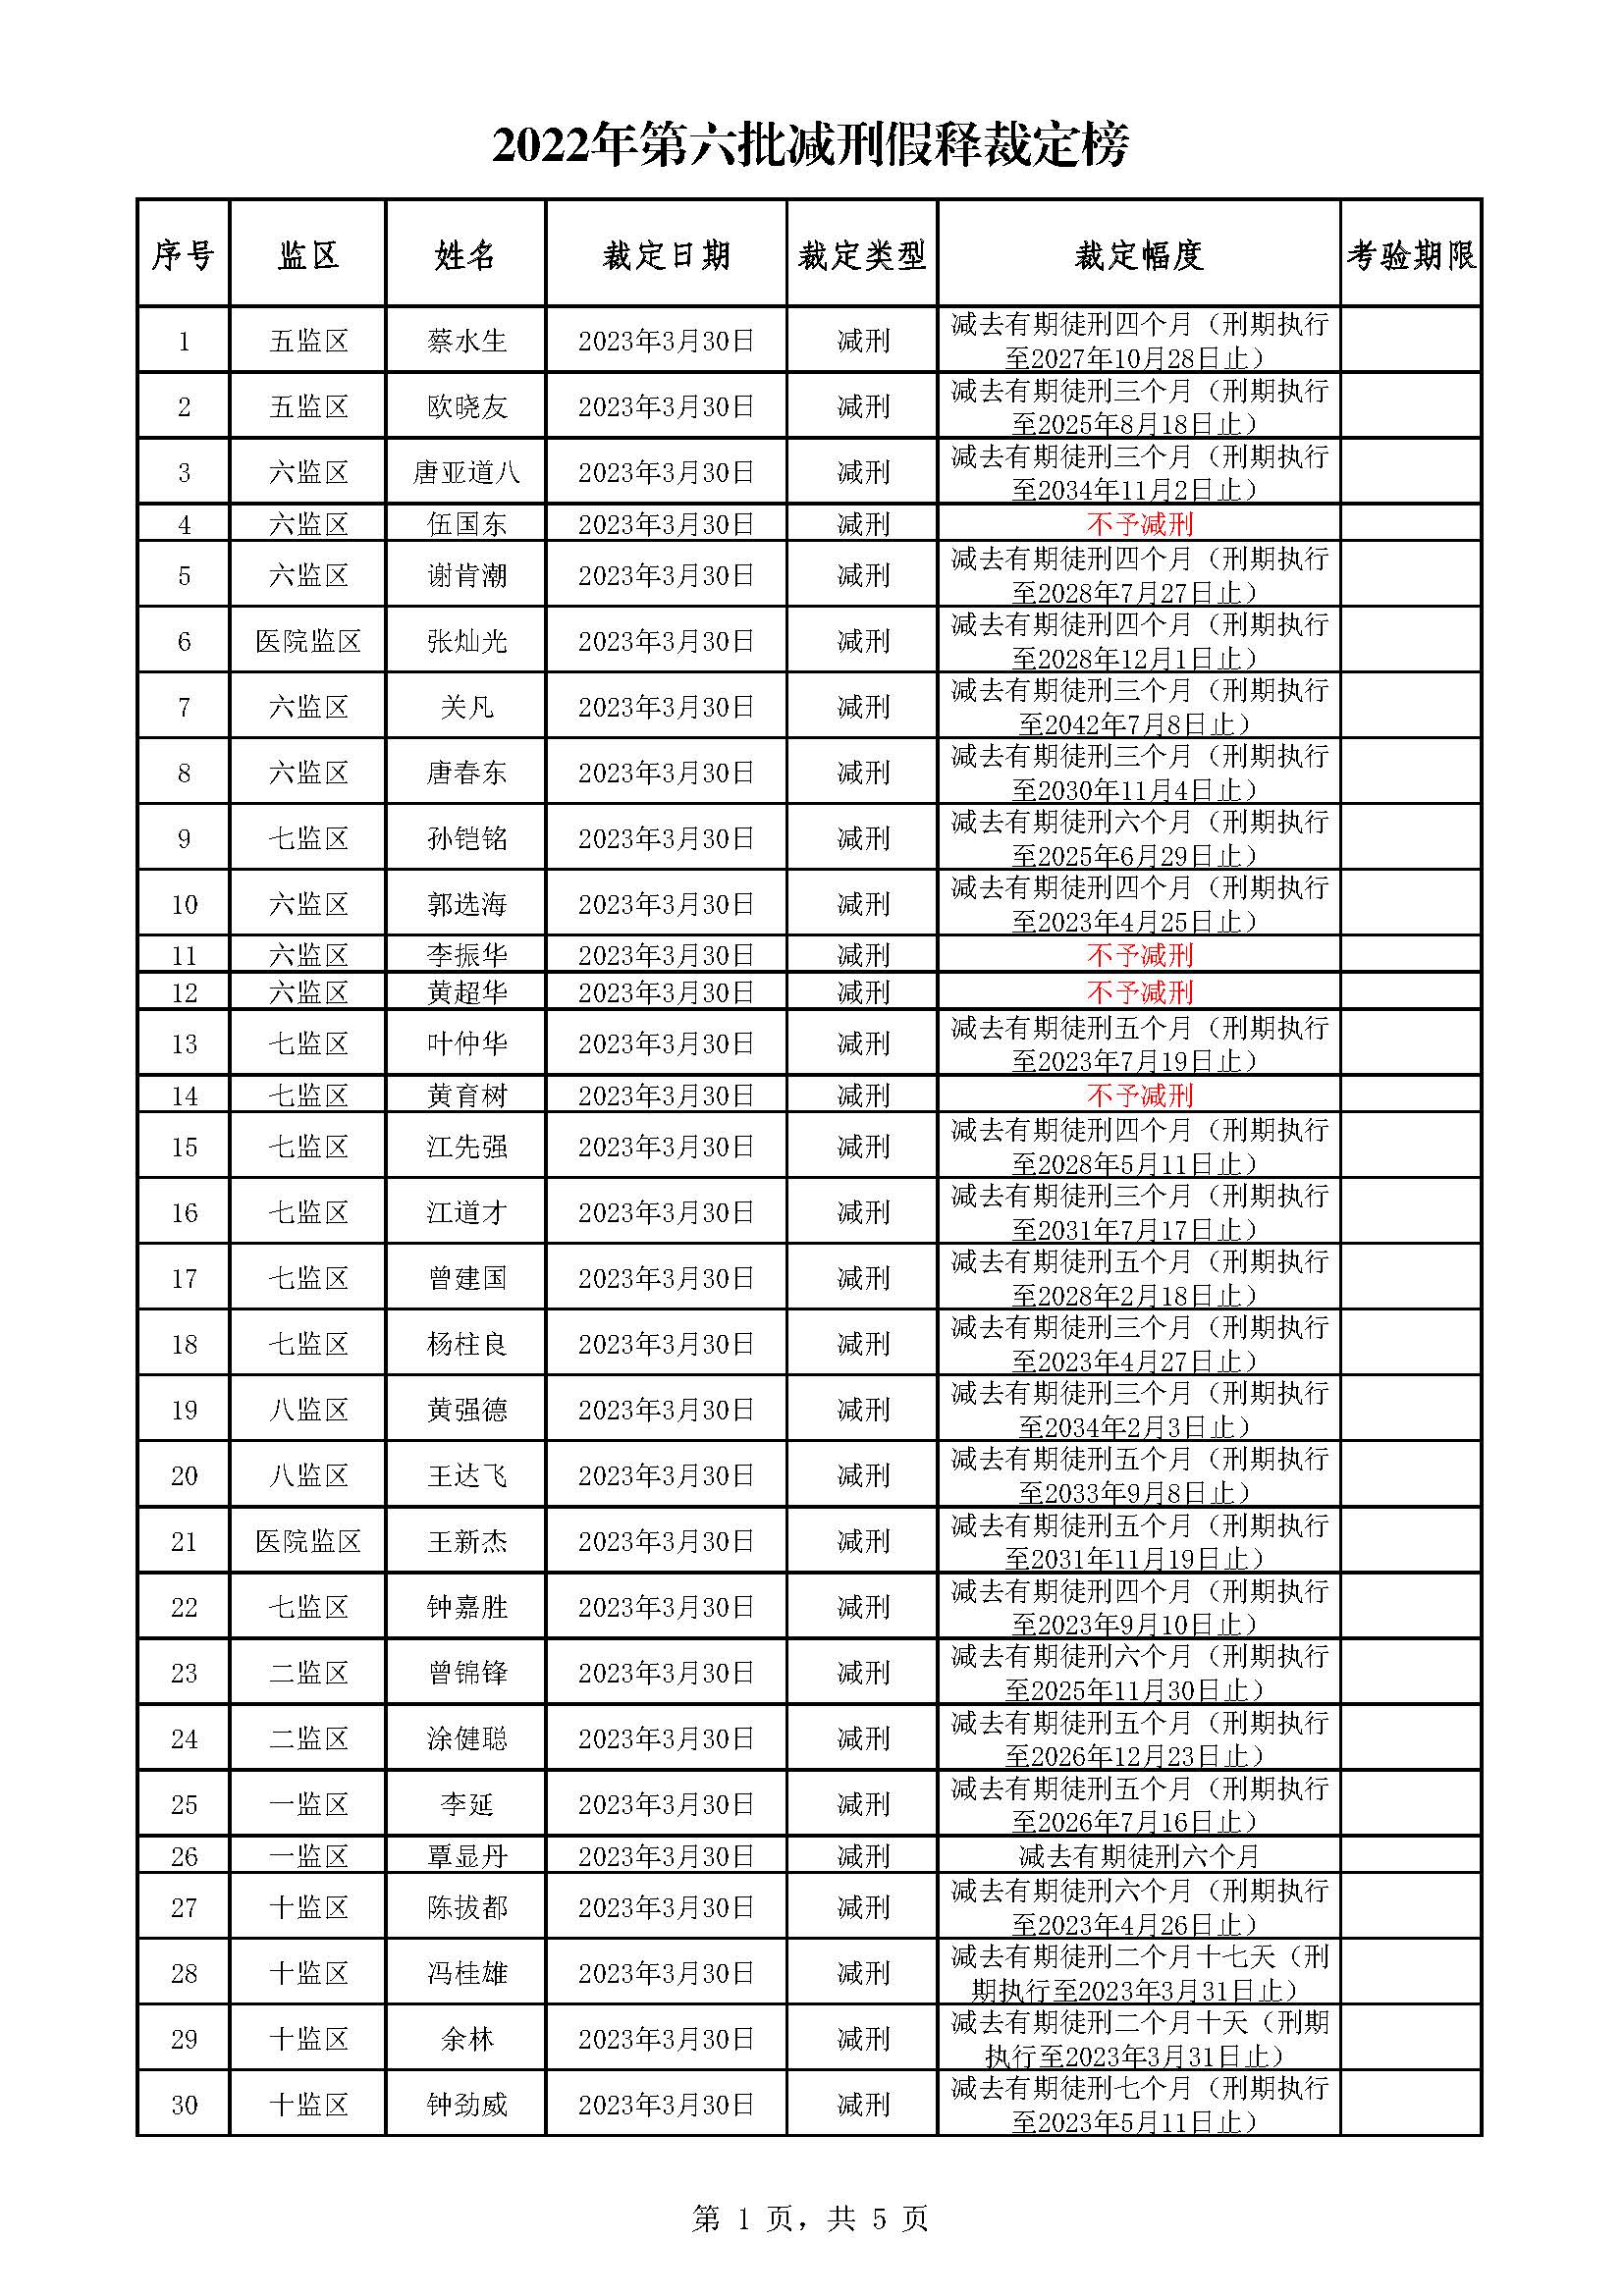 广东省明康监狱2022年第六批减刑假释裁定榜_页面_1.jpg